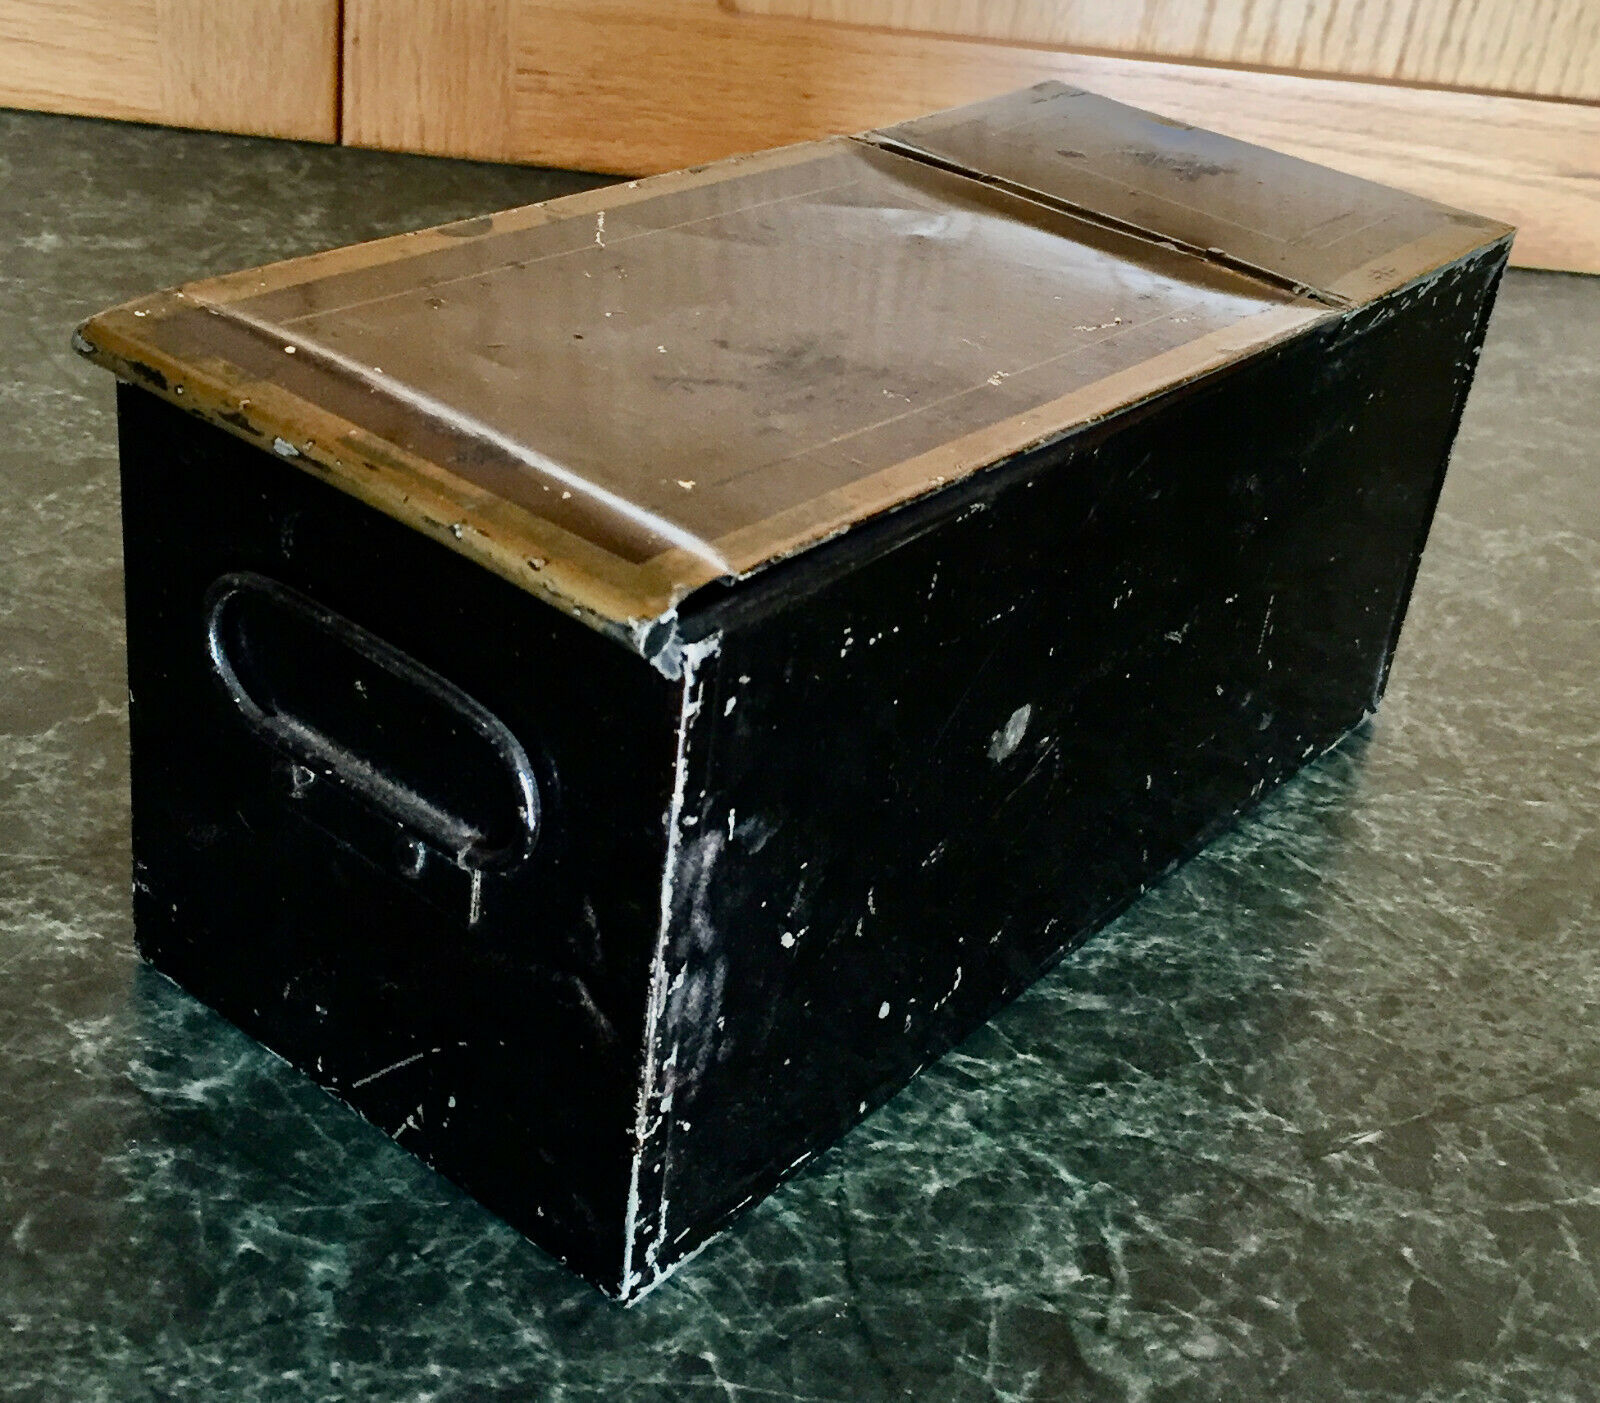 Antique cash box or safe deposit